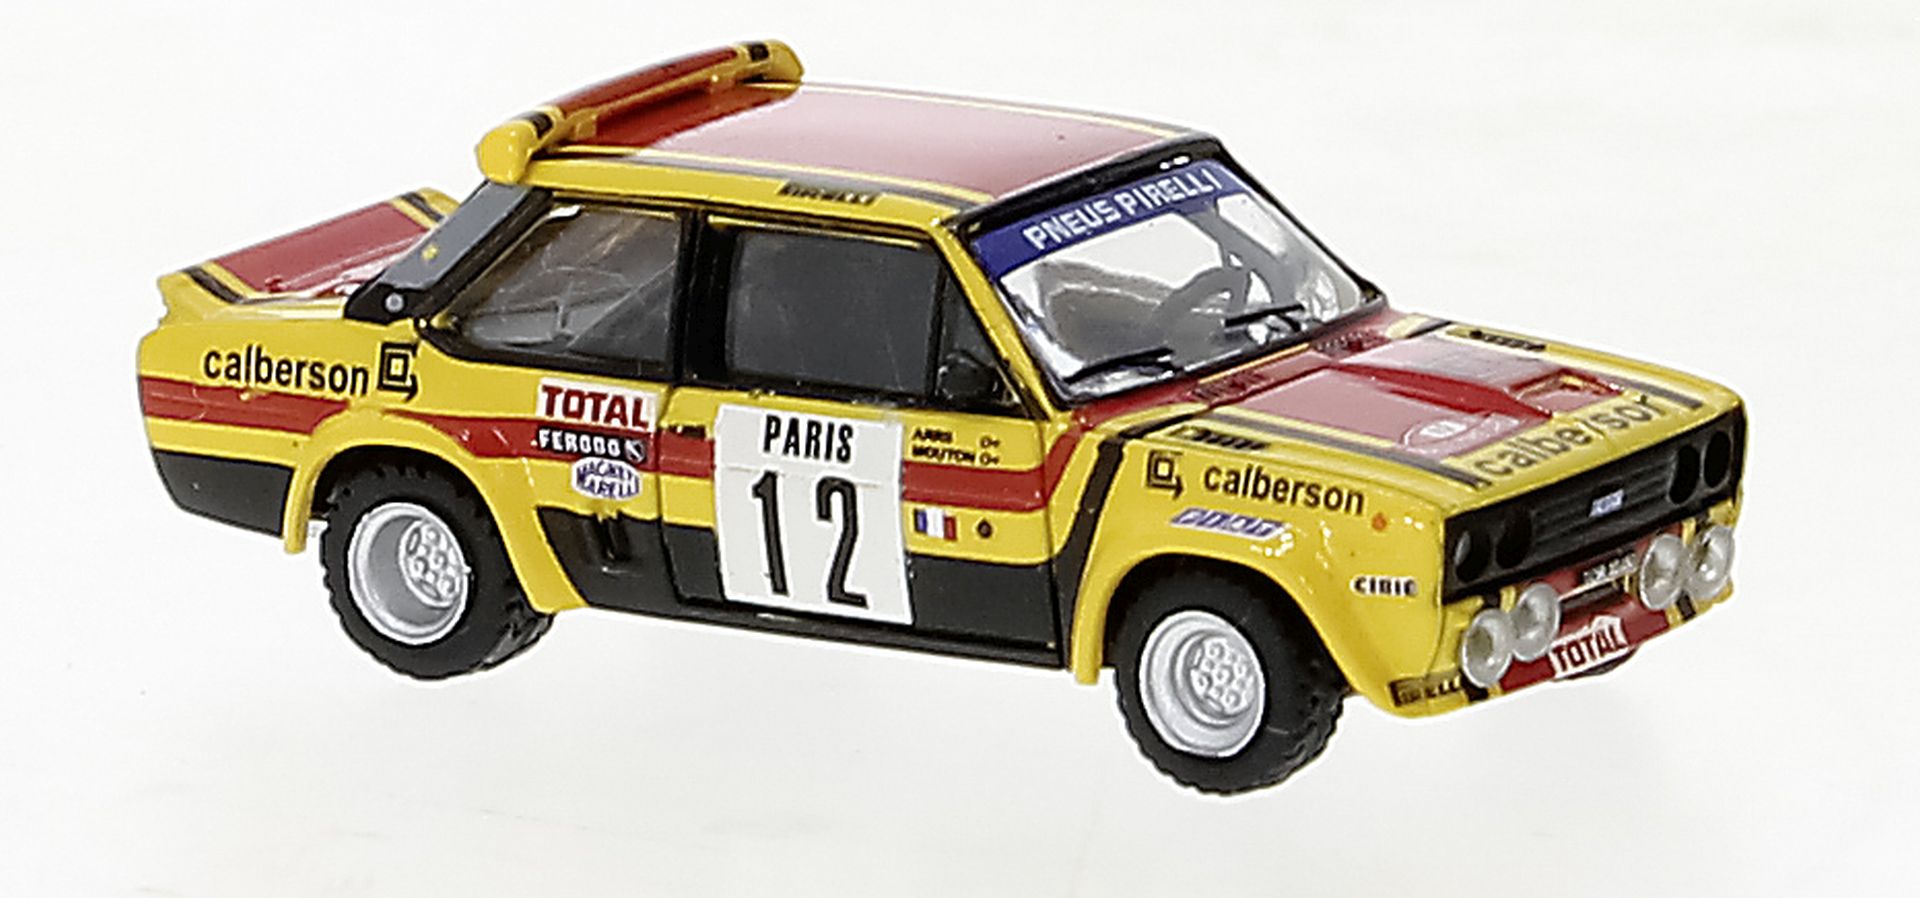 Brekina 22659 - Fiat 131 Abarth, Calberson , Monte Carlo, M.Mouton, 12, 1980